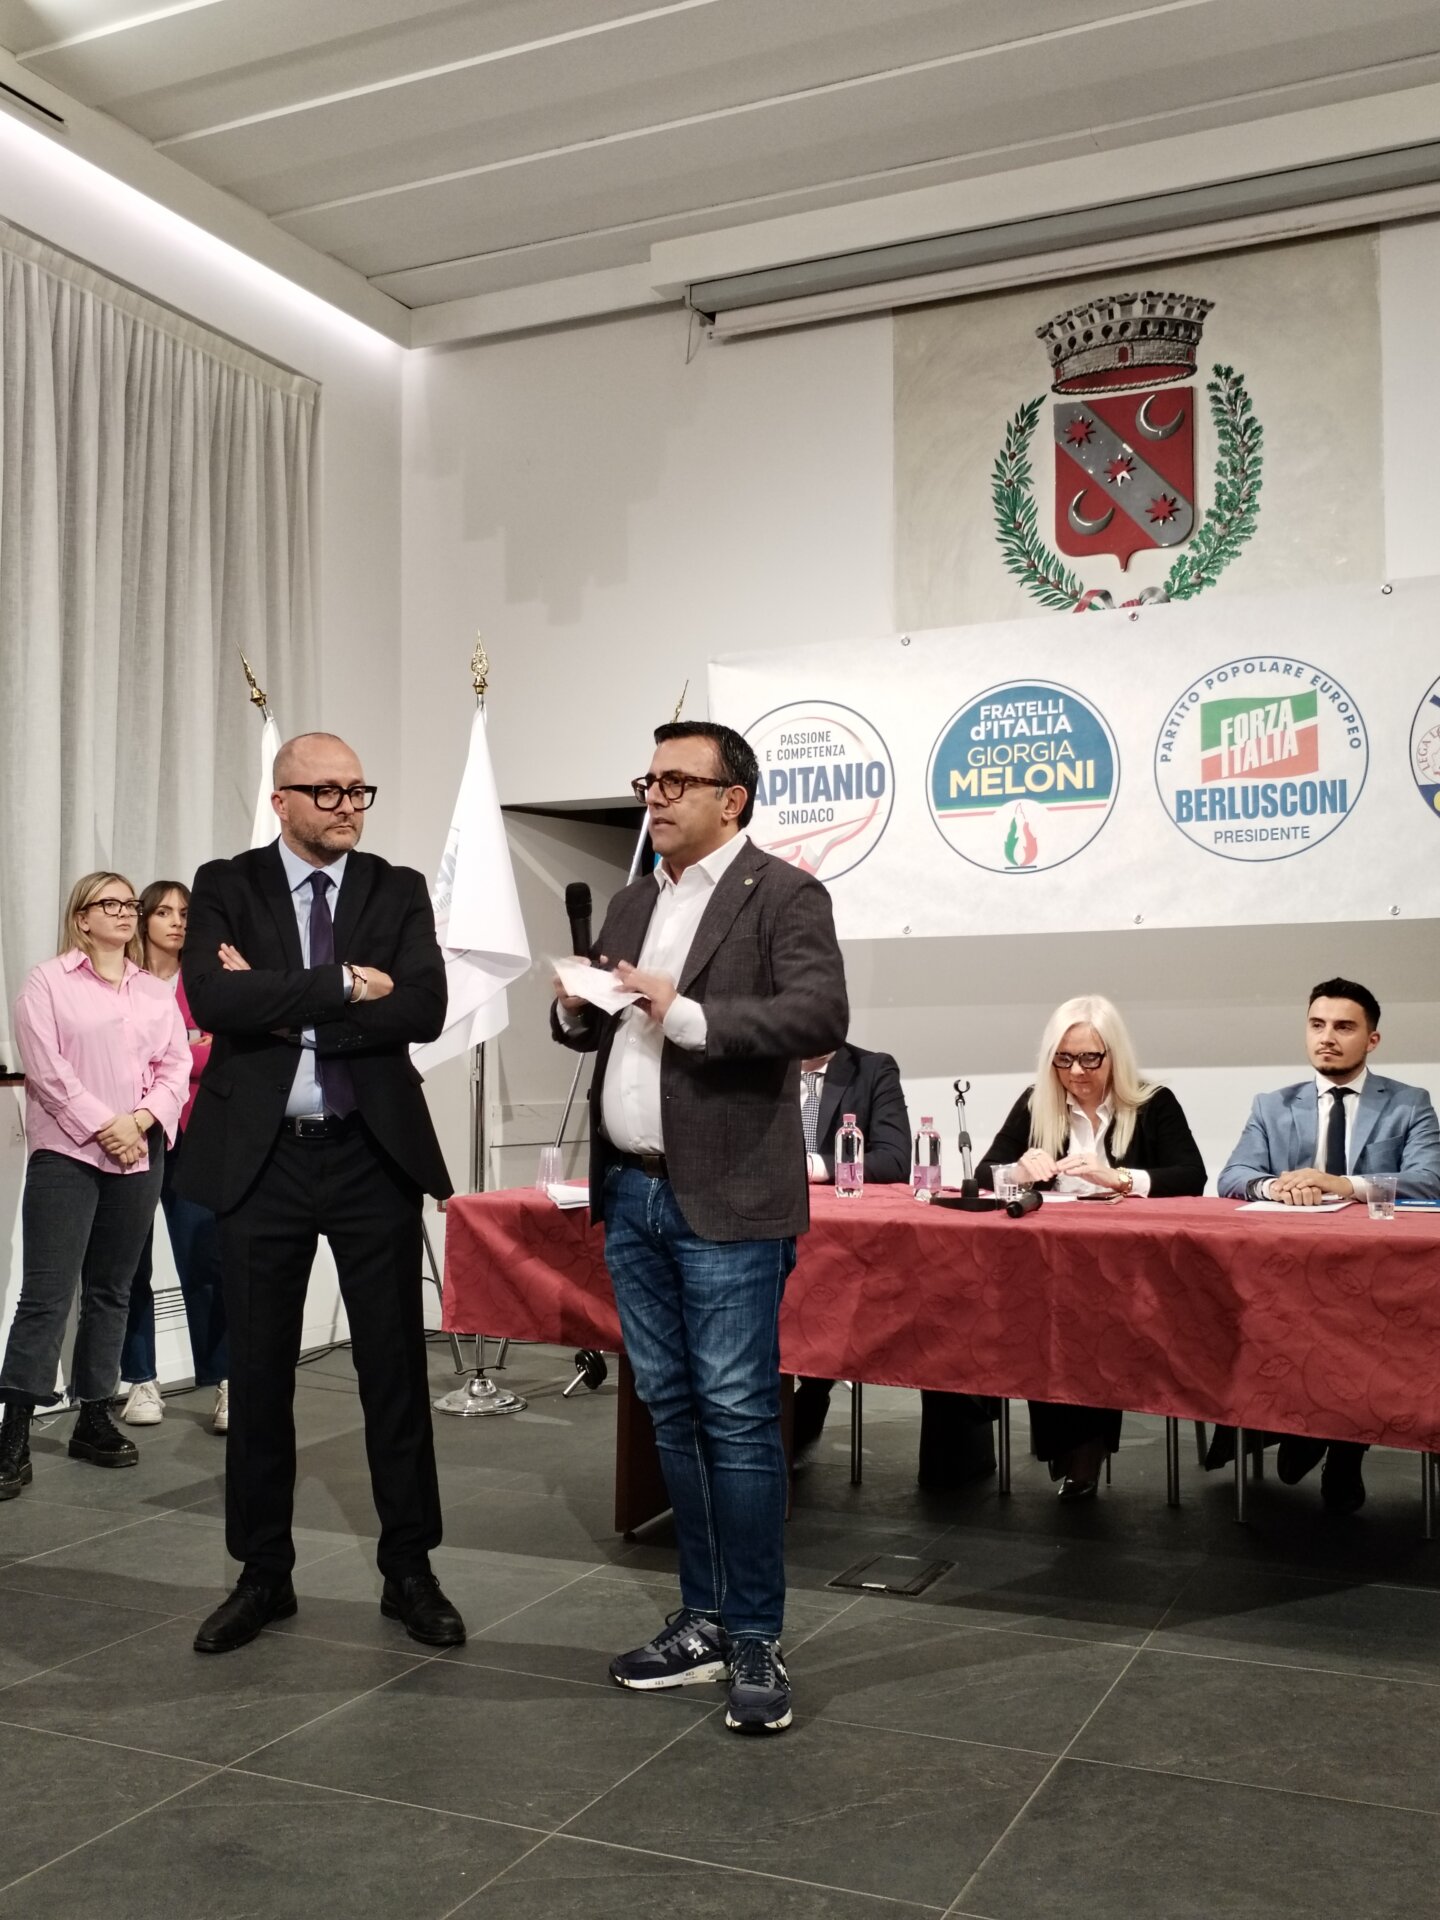 Concorezzo Presentazione Mauro Capitanio sindaco e coalizione di centrodestra